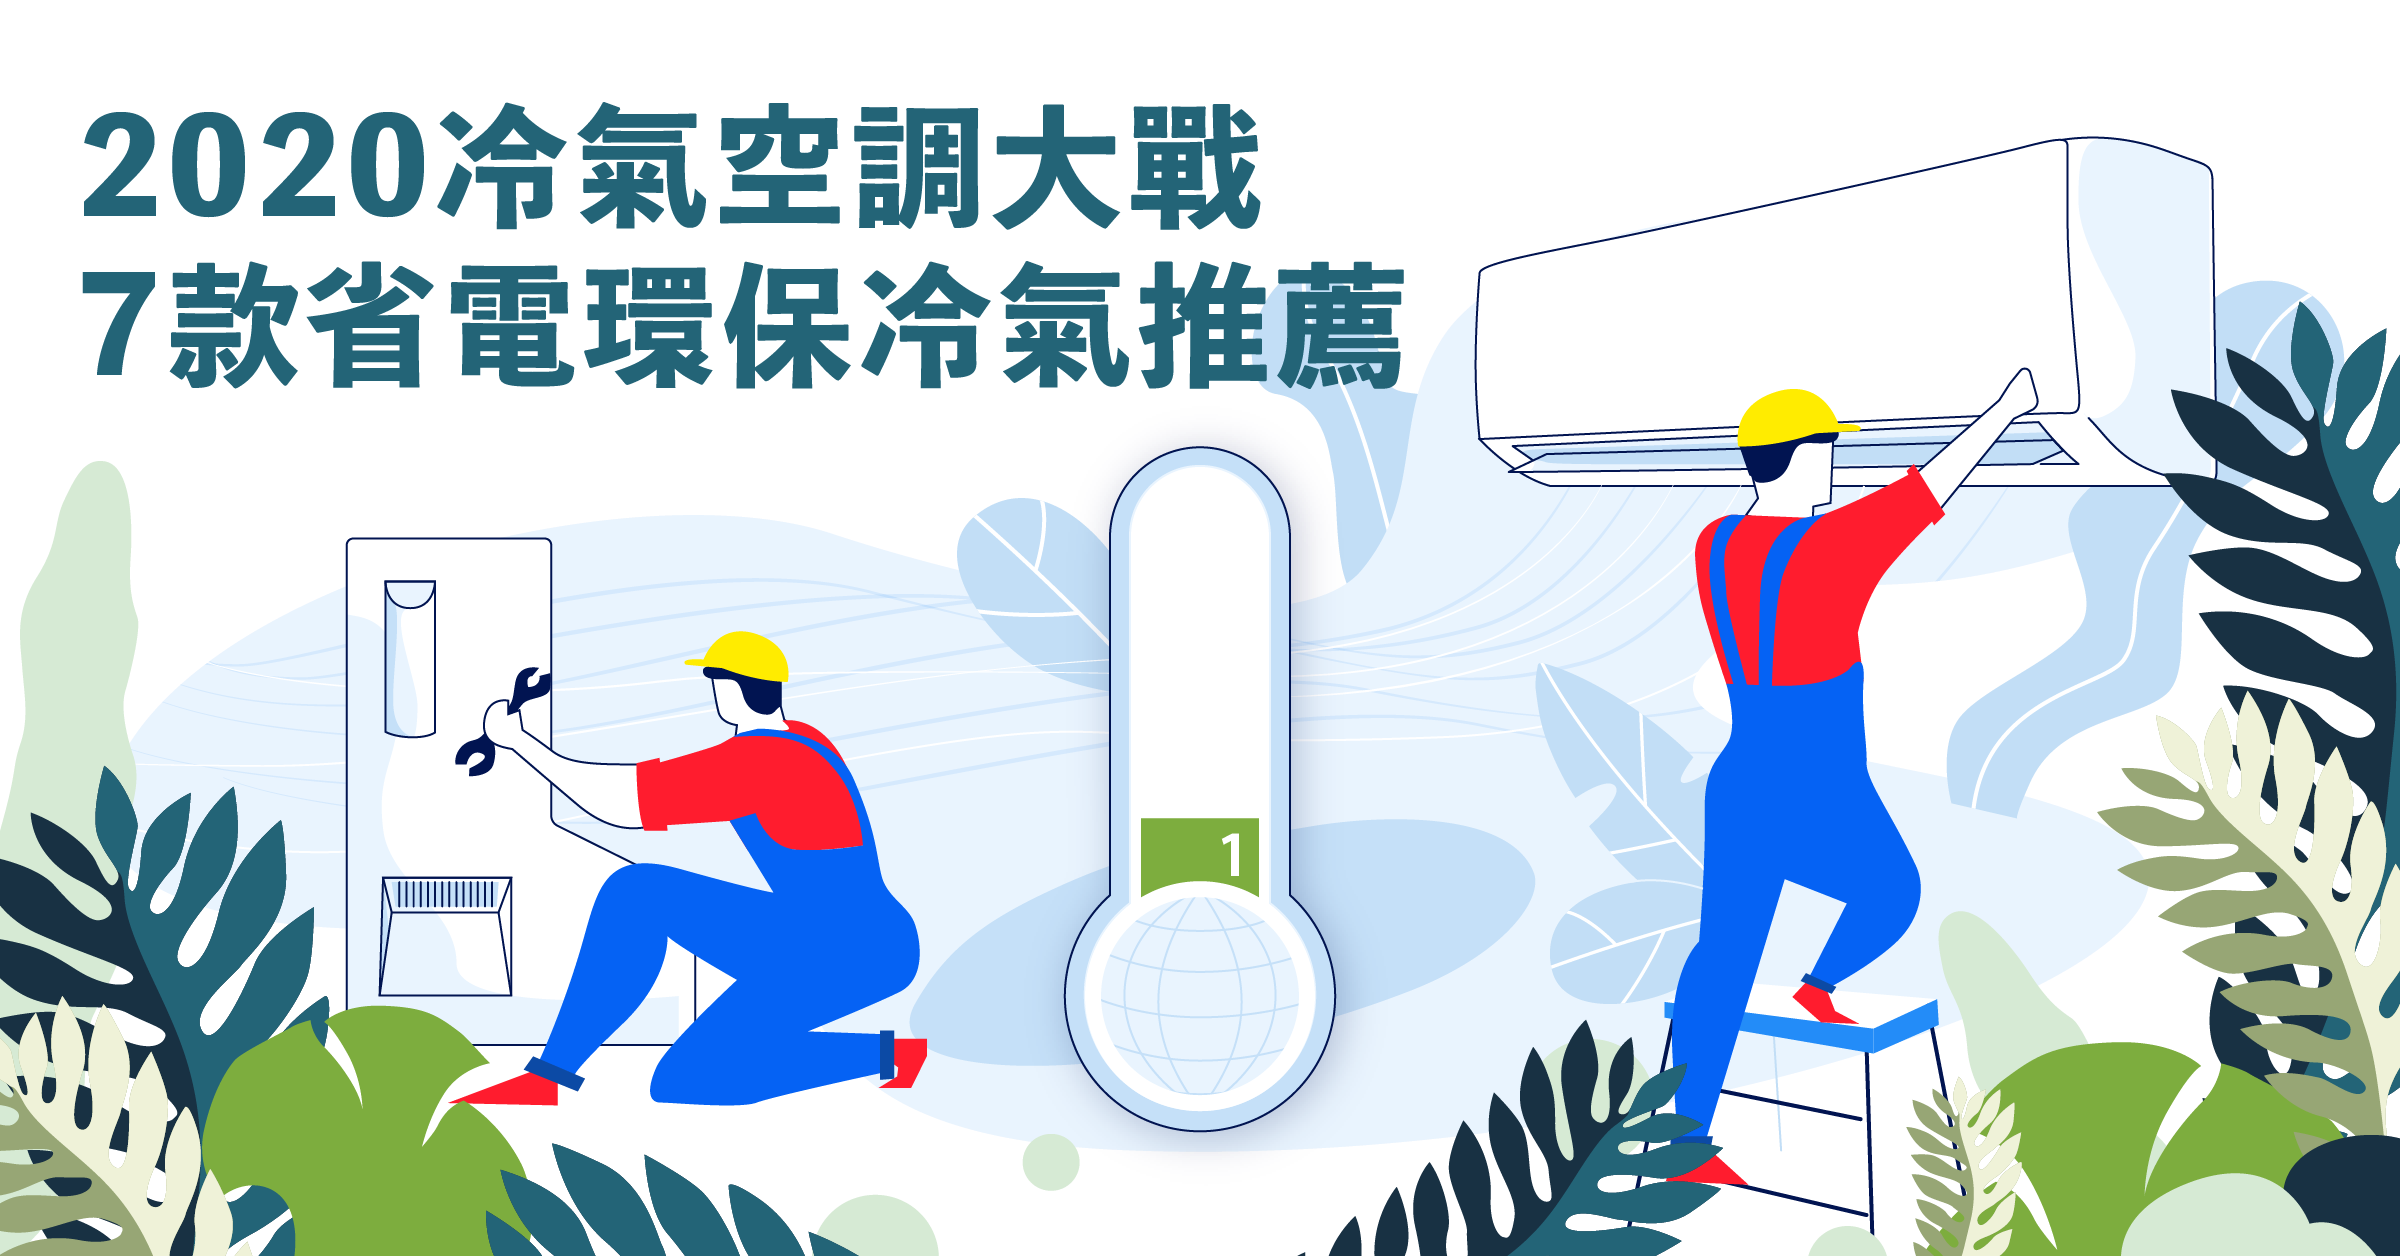 照片中提到了2020冷氣空調大戰、7款省電環保冷氣推薦、1，包含了香港環境保護署、插圖、剪貼畫、產品設計、人類行為